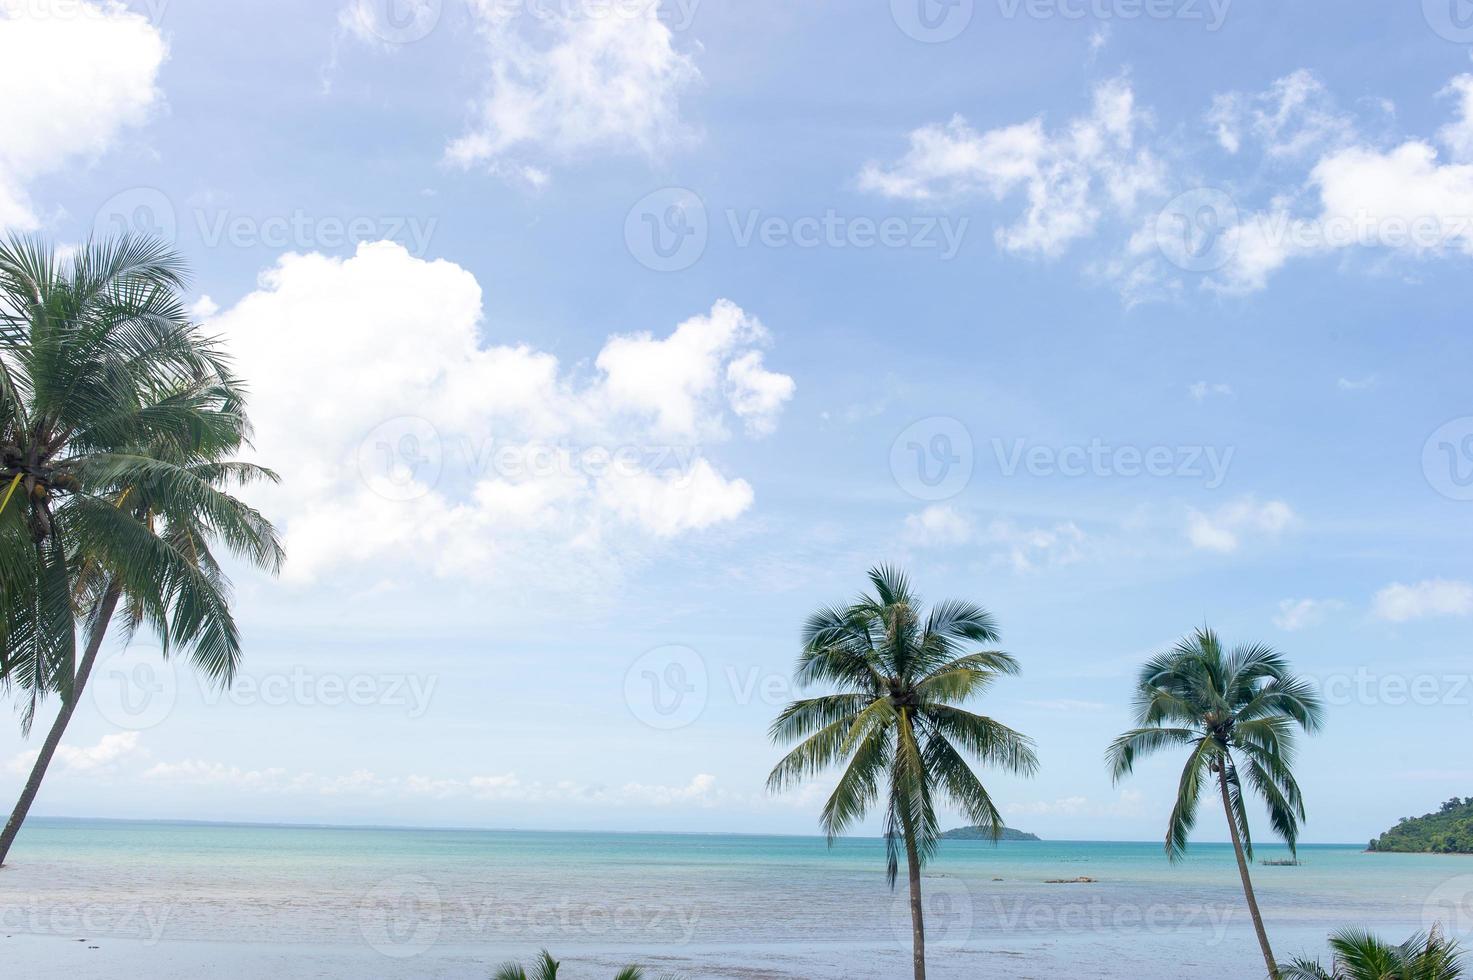 kokospalmer och vackert hav och moln fulla av himmel foto